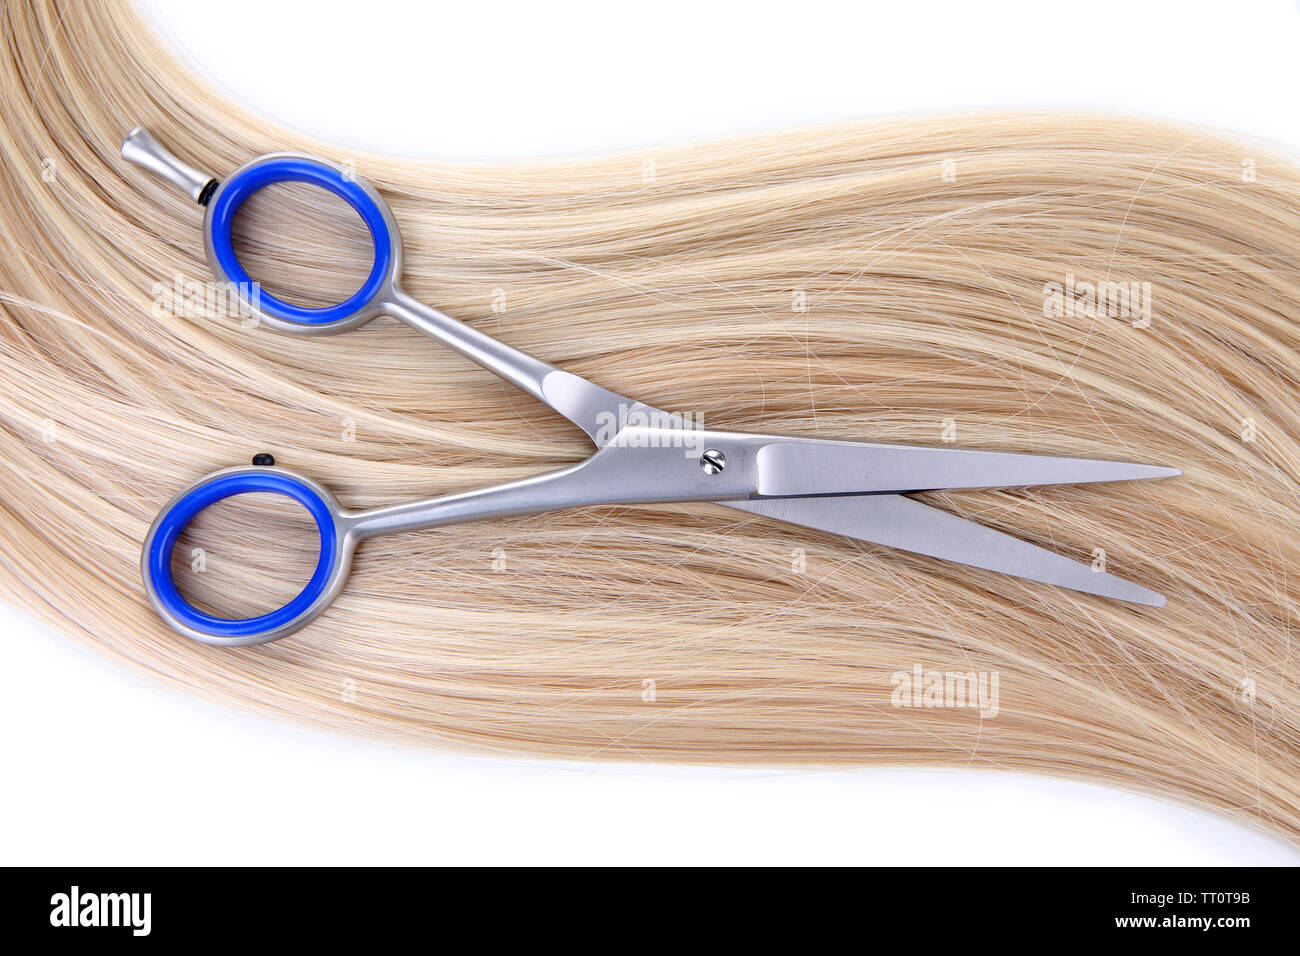 Lunghi capelli biondi e un paio di forbici isolato su bianco Foto Stock